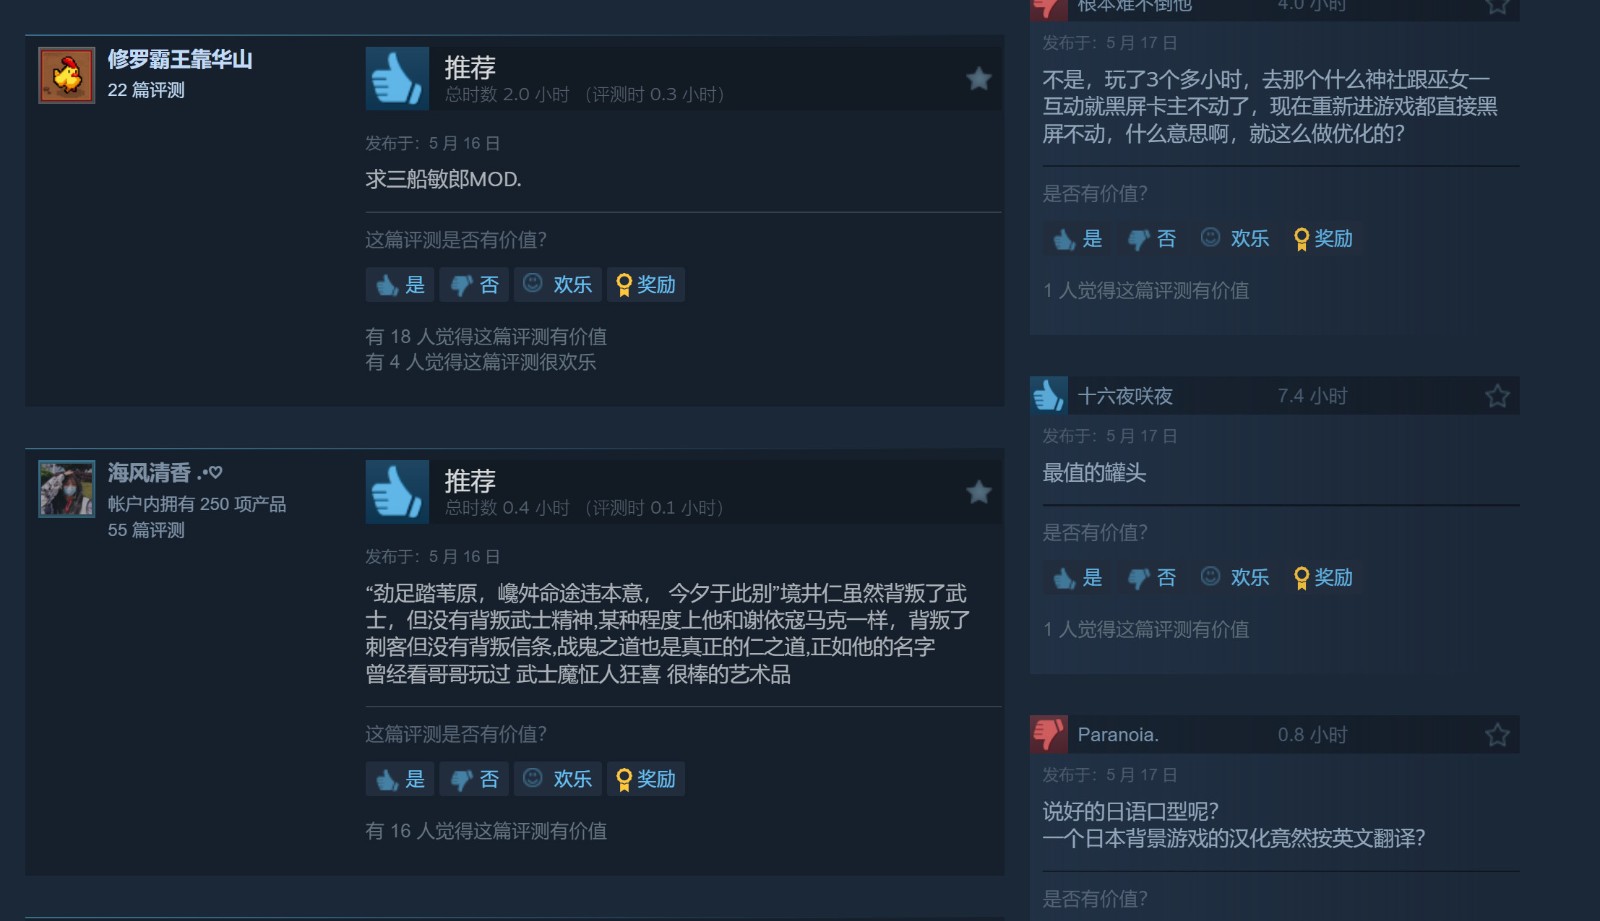 《對馬島之鬼》Steam特別好評 在線峰值接近6萬